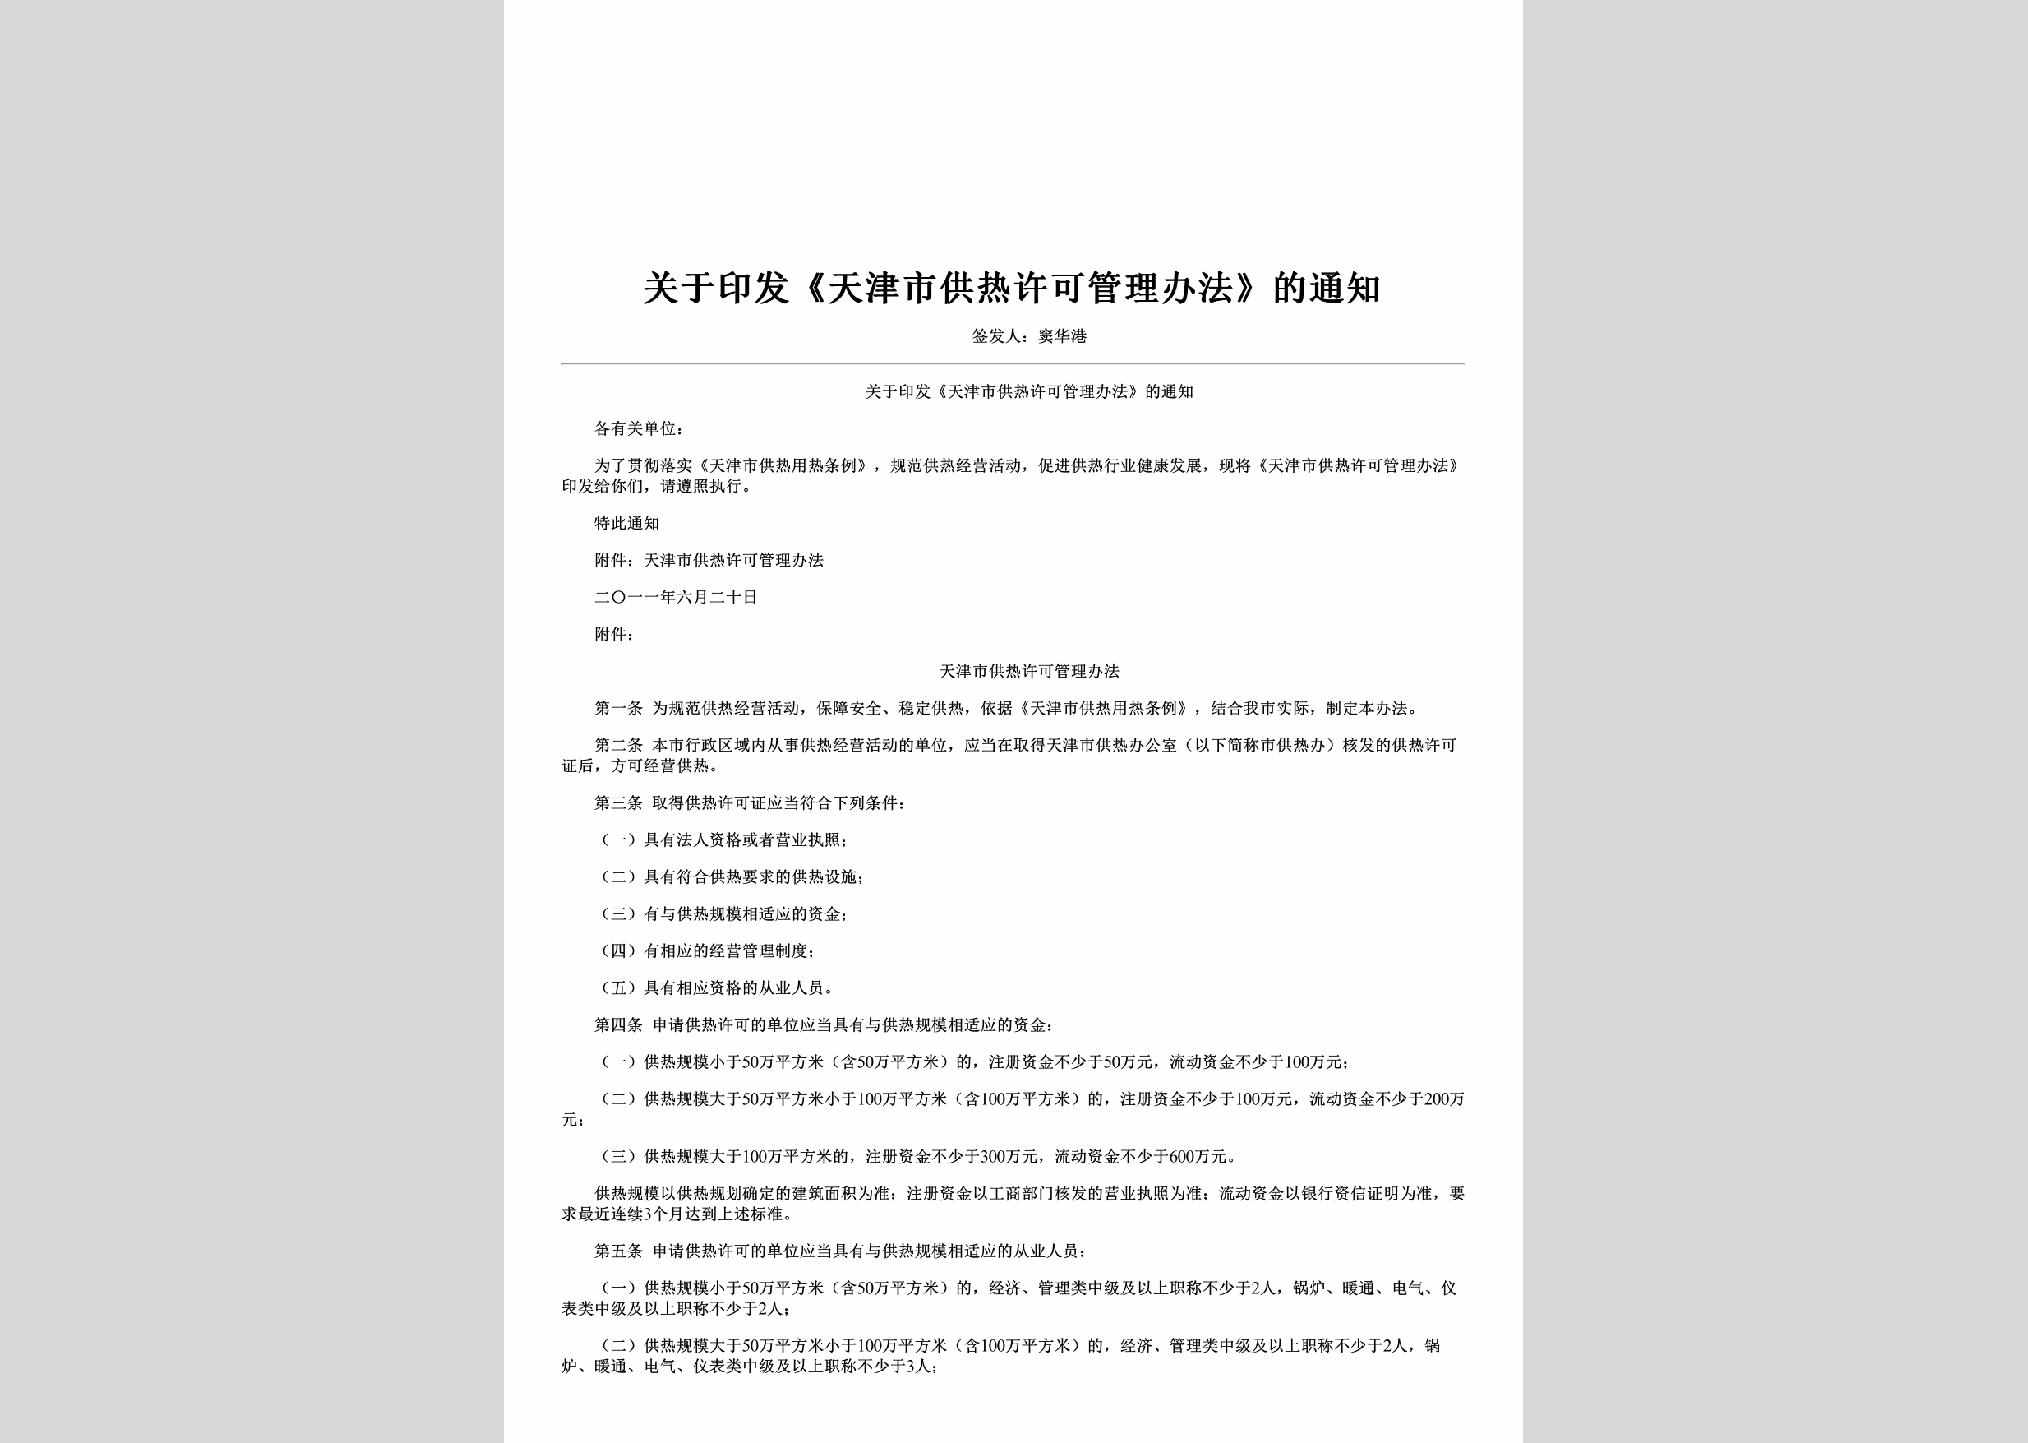 TJ-GYTJSGR-2011：关于印发《天津市供热许可管理办法》的通知